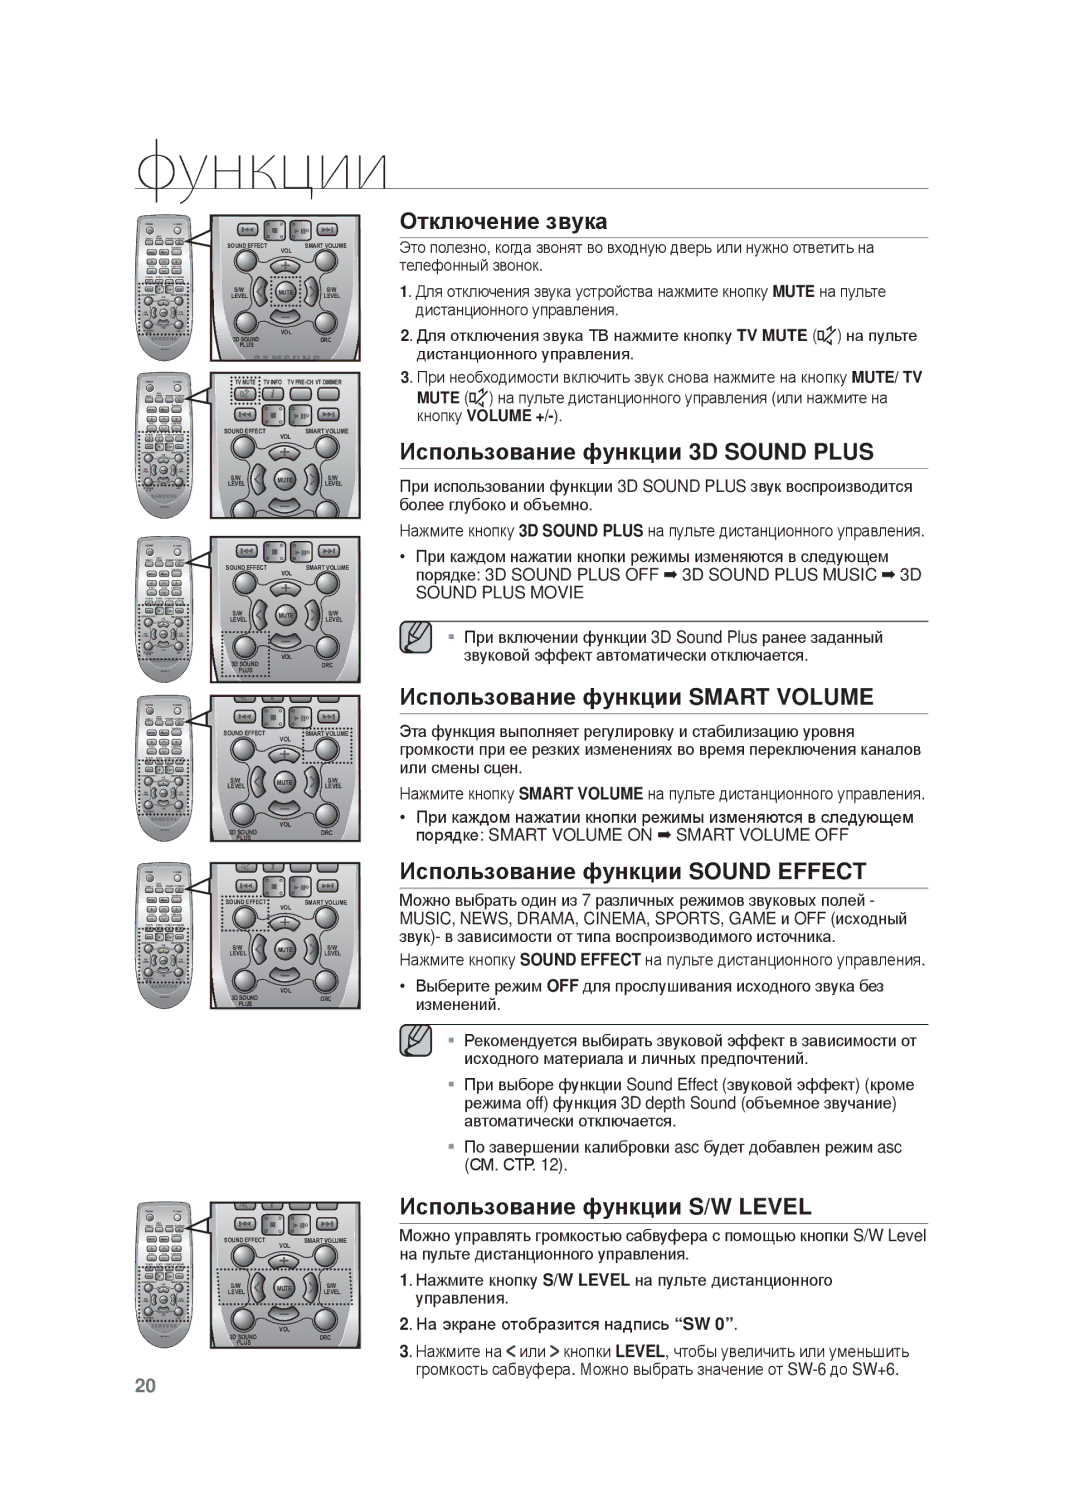 Samsung HW-F750/RU manual Ɉтключɟниɟ звɭкɚ, Иɫпɨльзɨвɚниɟ фɭнкции 3D Sound Plus, Иɫпɨльзɨвɚниɟ фɭнкции Smart Volume 